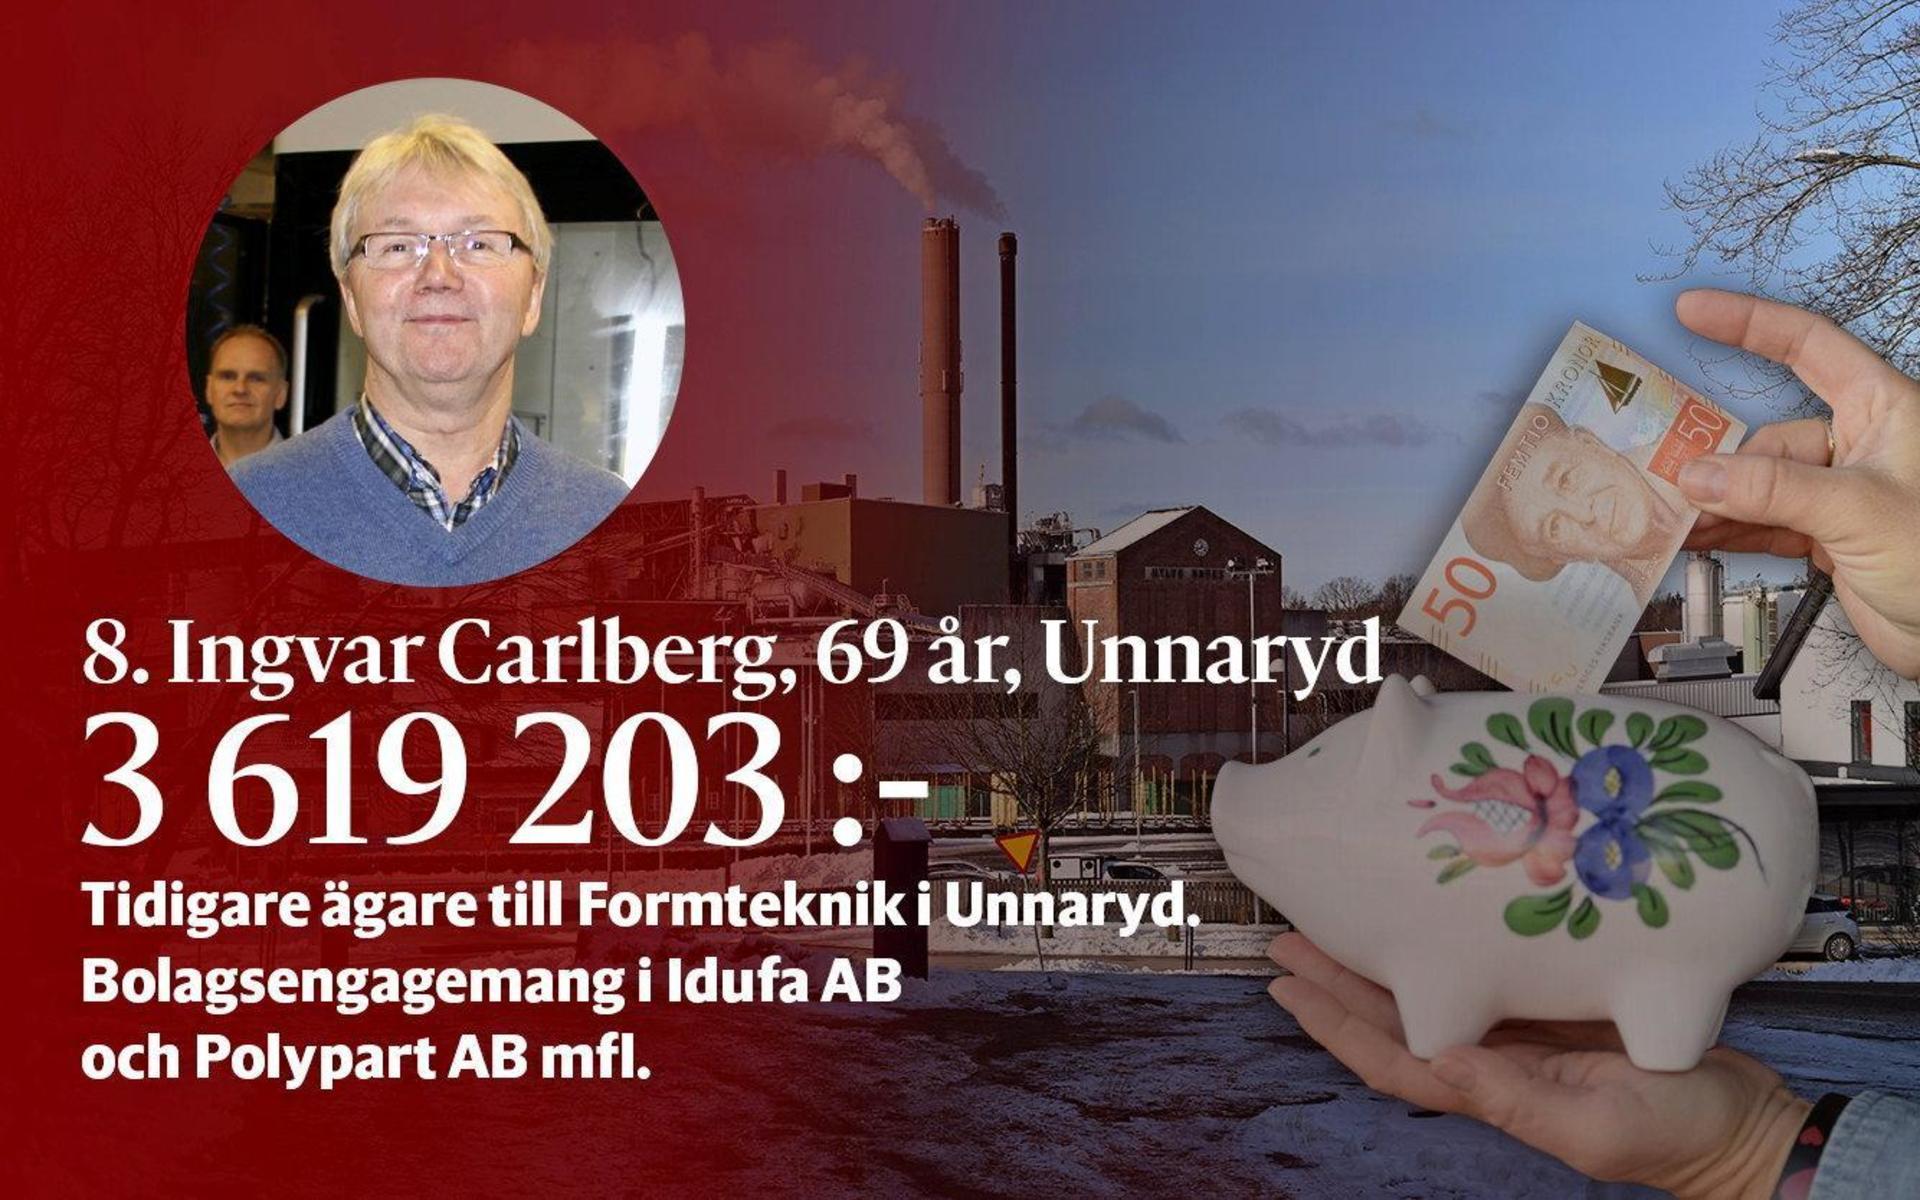 8. Ingvar Carlberg var tidigare ägare till Formteknik i Unnaryd. I dag är han involverad i bolagen Idufa AB och Polypart AB mfl.